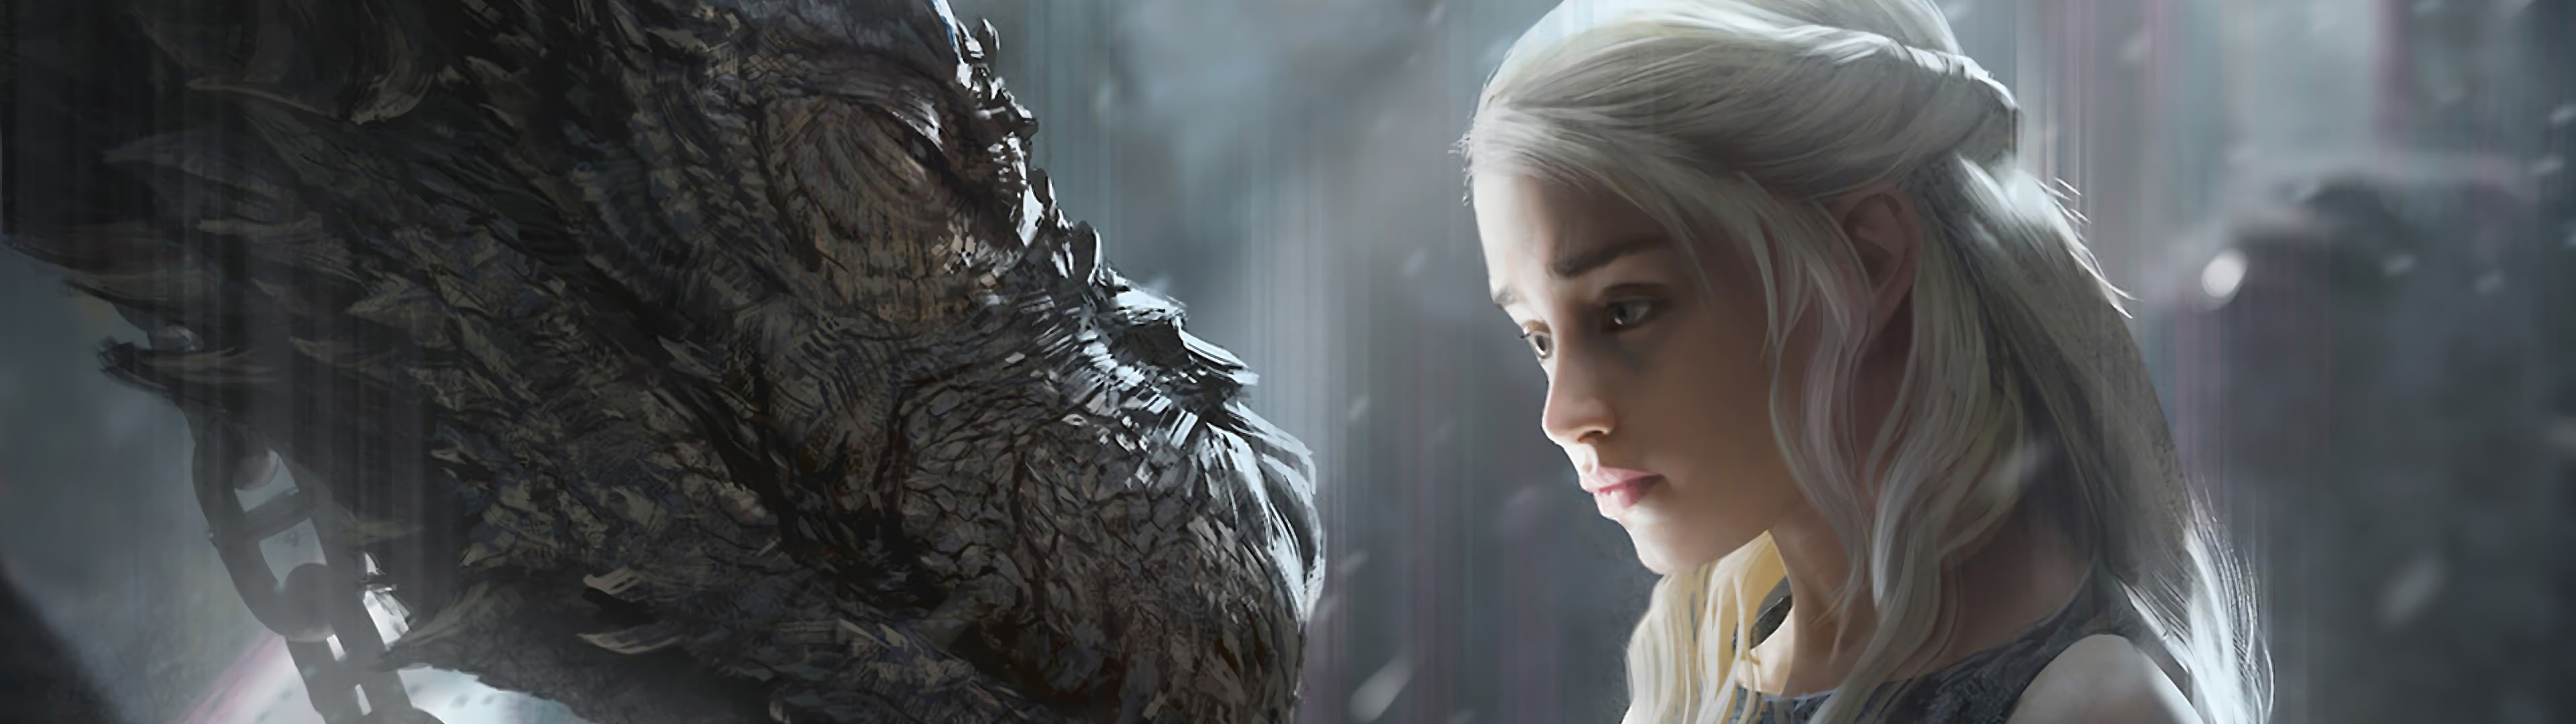 Daenerys Targaryen, Dragon, Game Of Thrones, 4k, - Game Of Thrones - HD Wallpaper 